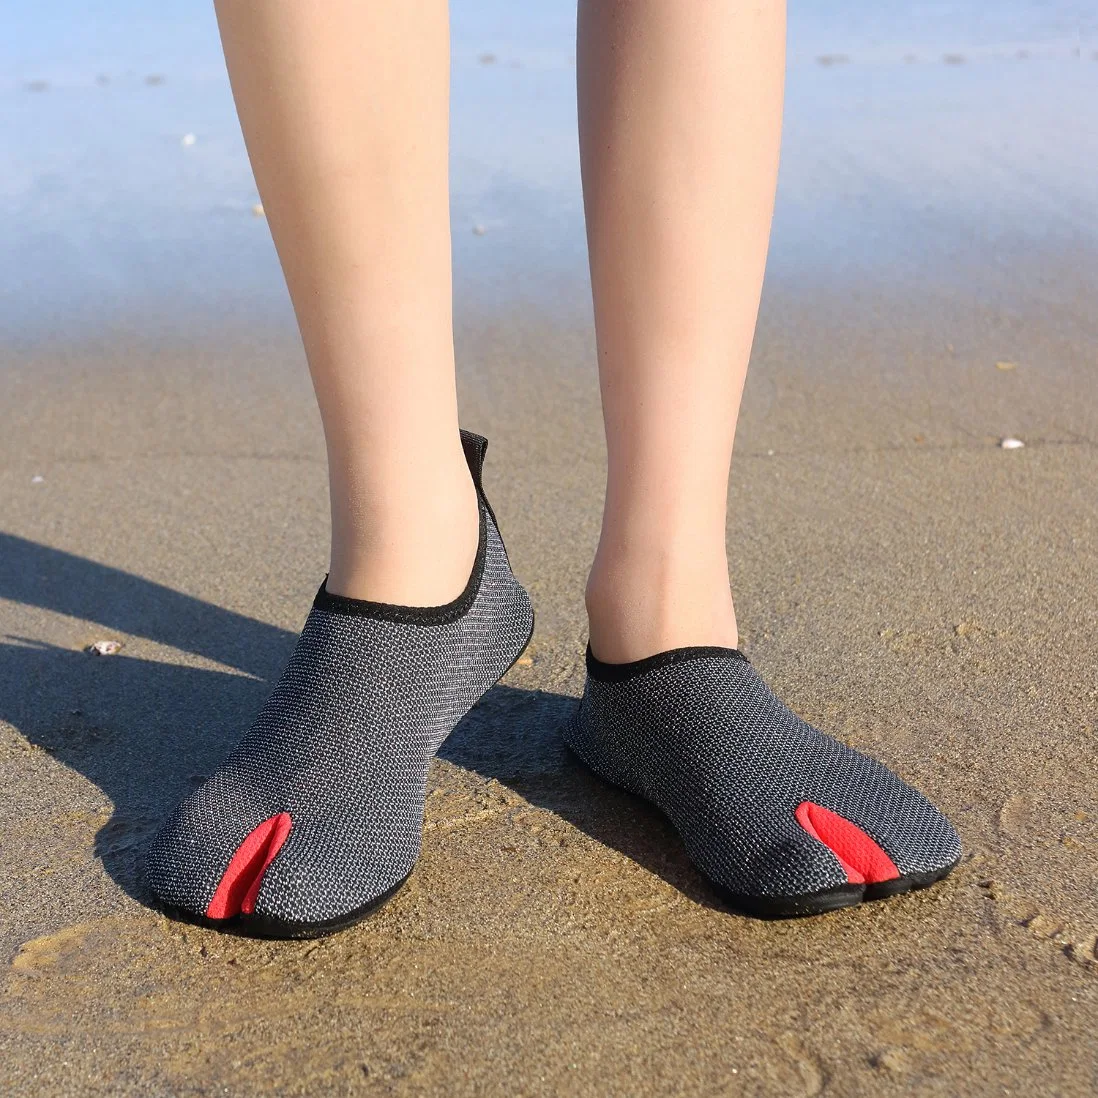 نسيج خفيف للأحذية يسمح بالتهوية ويجف بسرعة للأحذية الحافية.